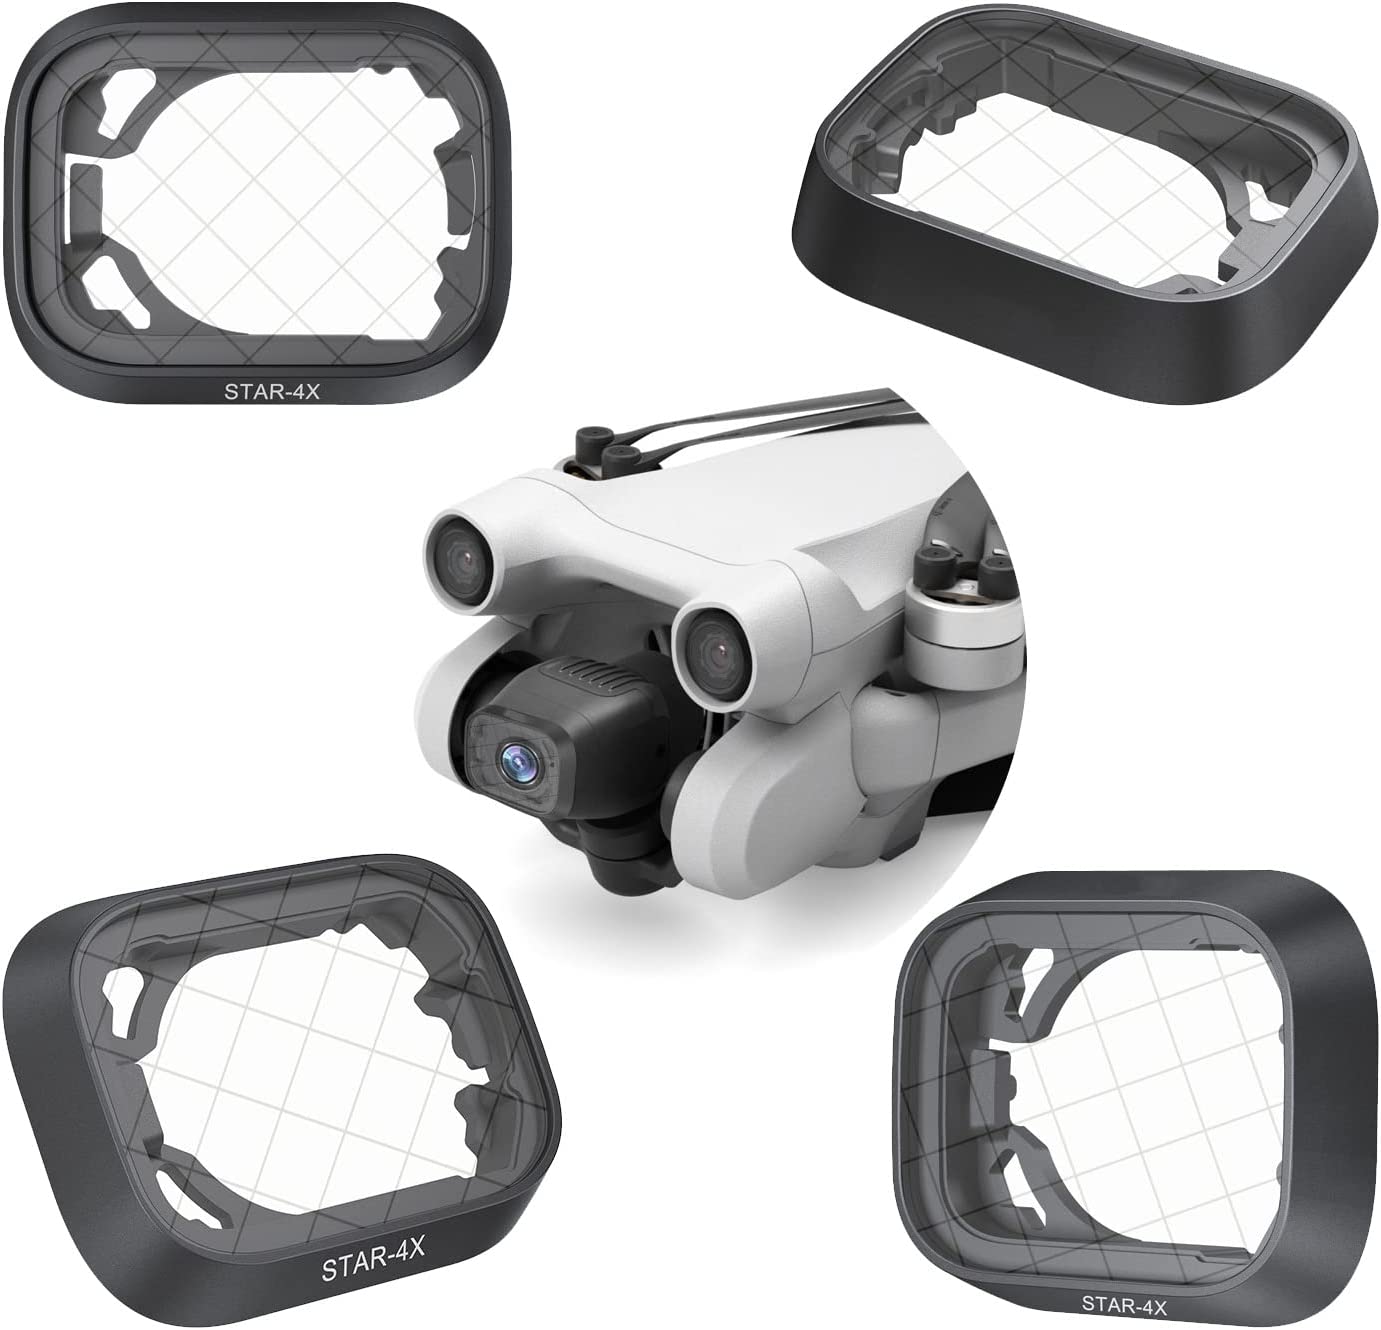 Mini 3 Pro Filtro Notte - Cross Star Light Mirror filter - Filtro Notturno stelline - Accessori Dji Mini 3 PRO - Fly to Discover